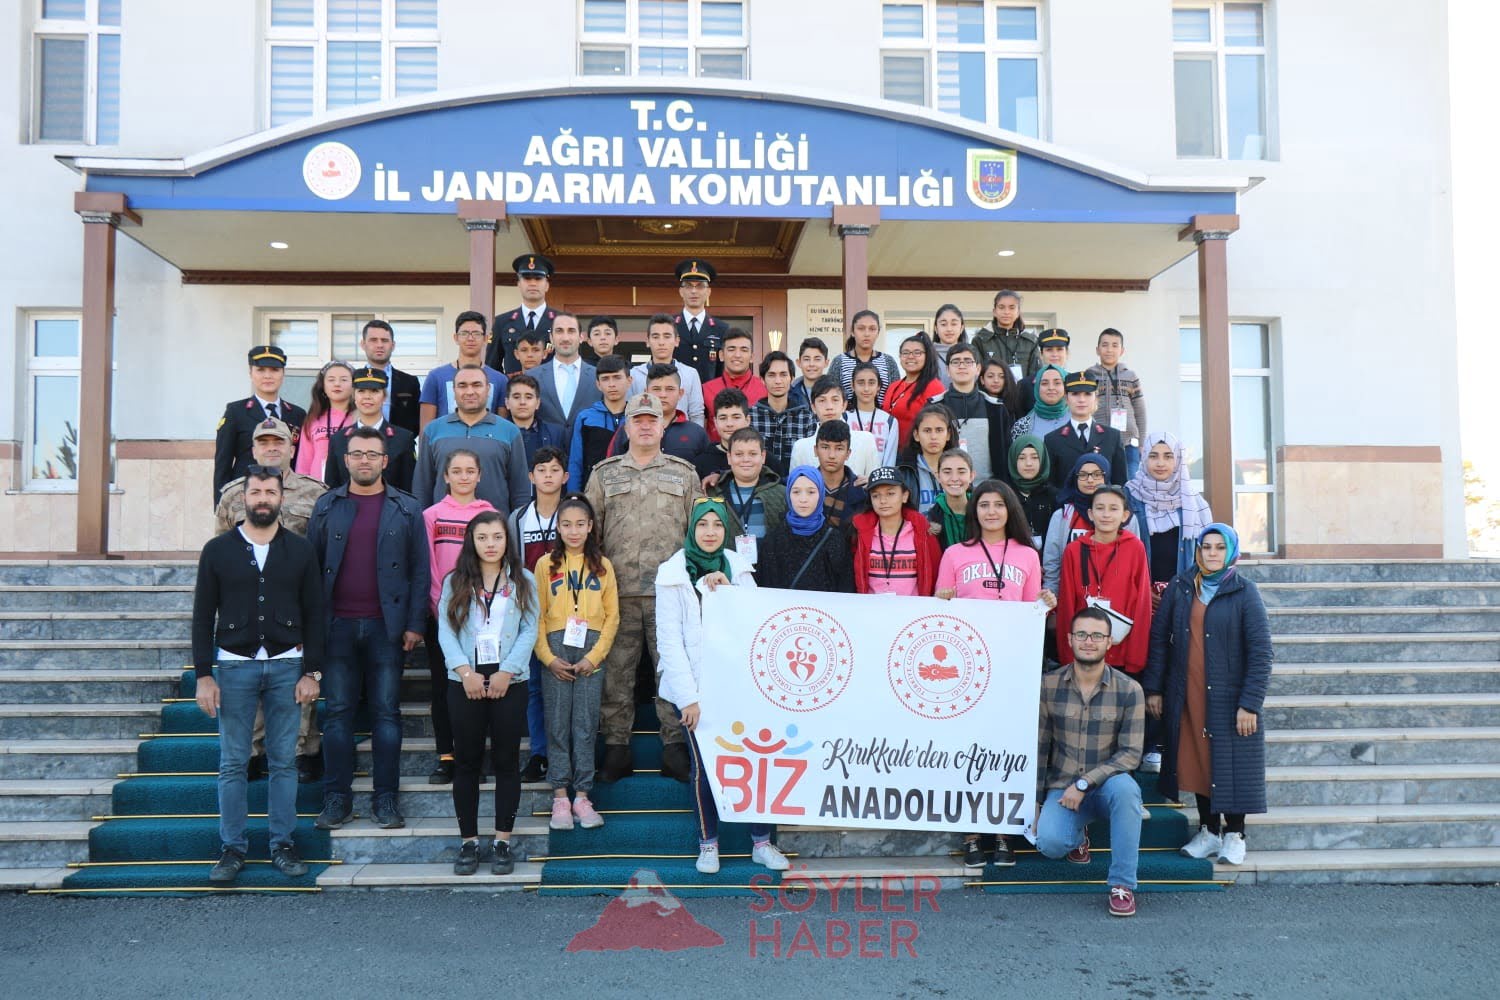 Kırıkkale'den ilimize gelen 40 öğrenci, İl Jandarma Komutanlığını ziyaret ettiler.